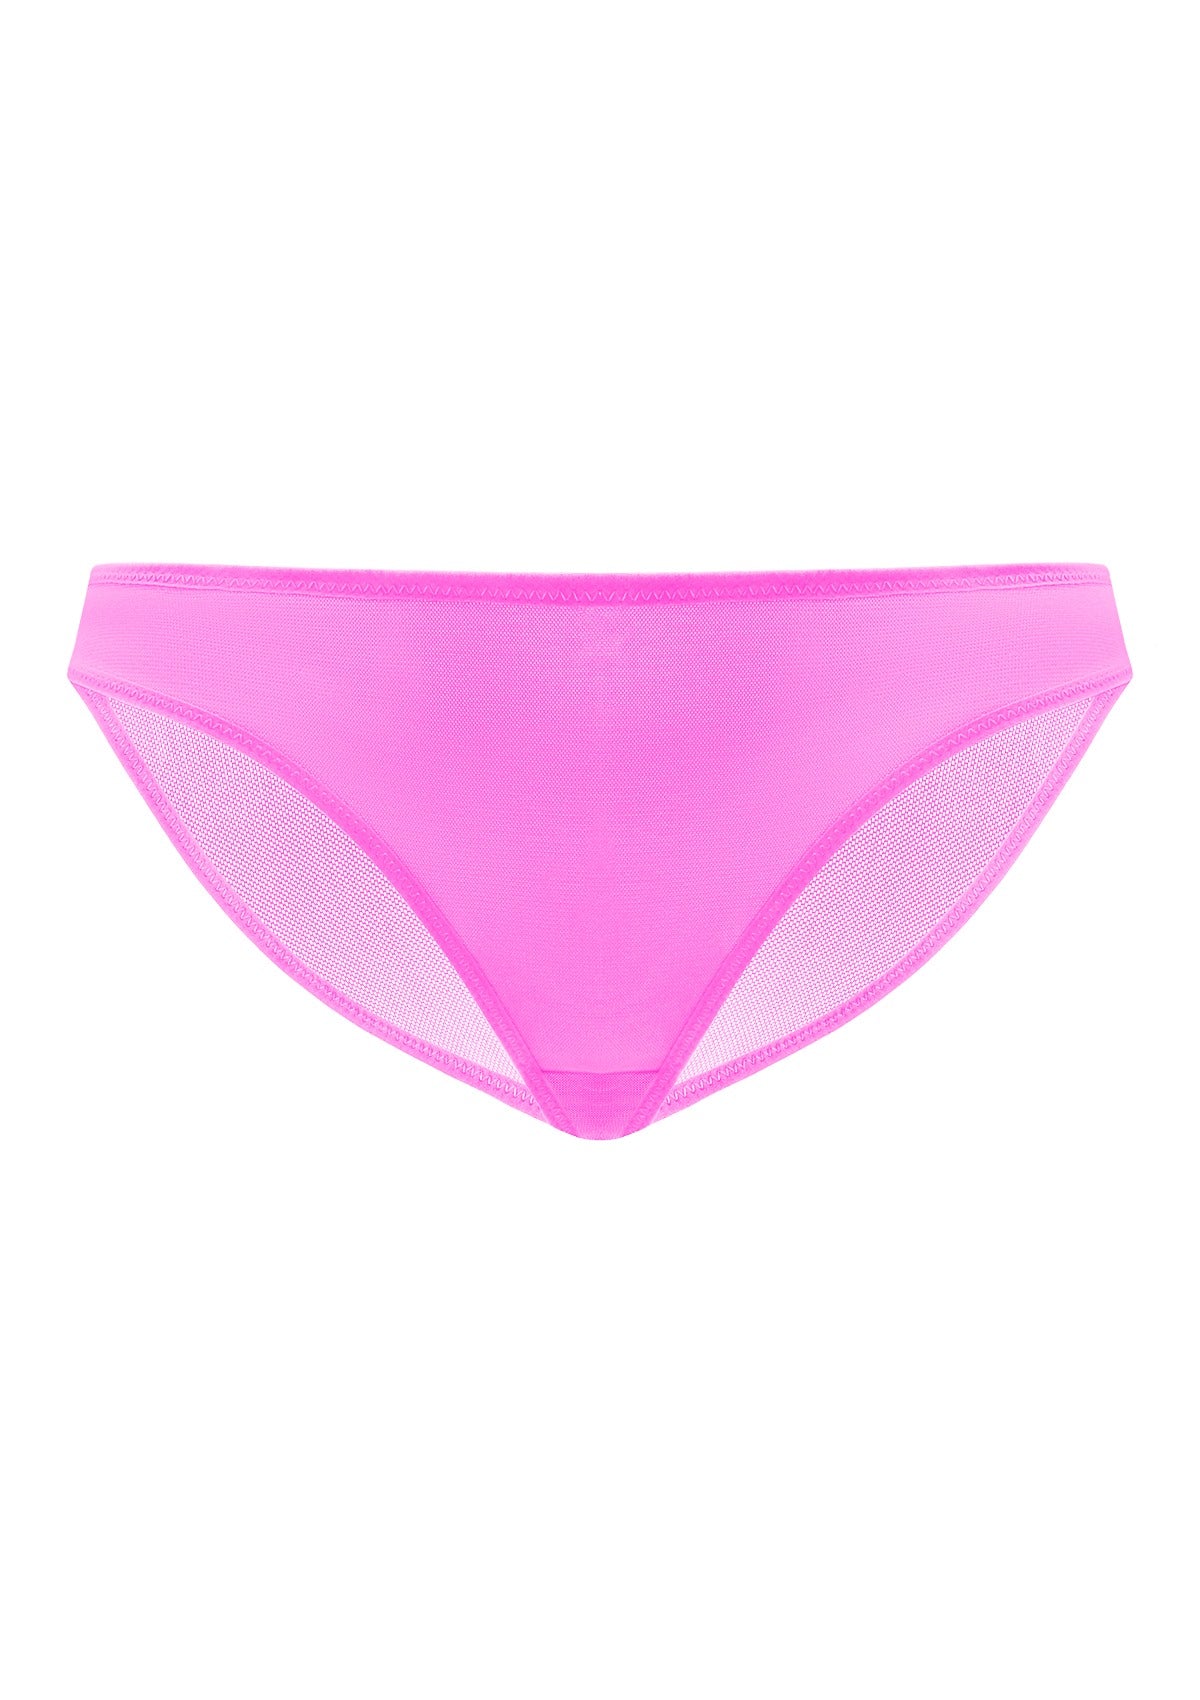 HSIA Billie Smooth Sheer Mesh Lightweight Soft Comfy Bikini Underwear - XXL / Black